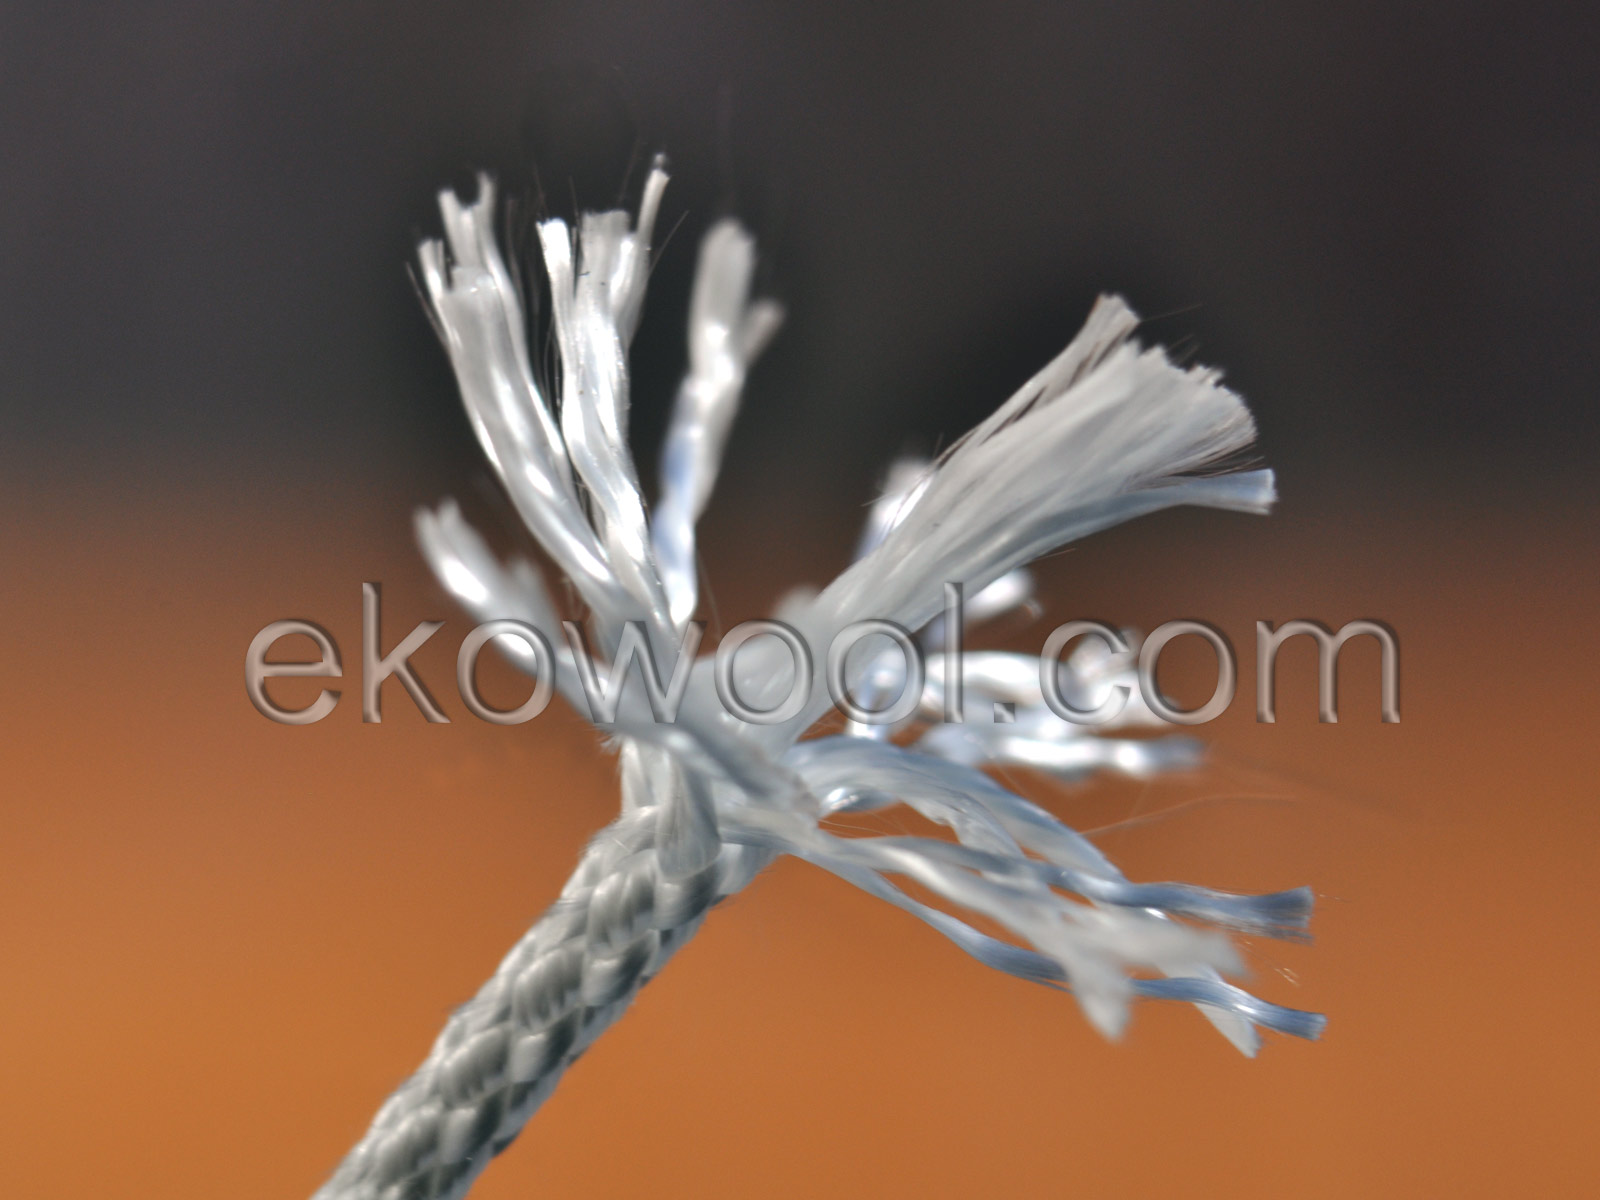 Genuine EKOWOOL silica cord